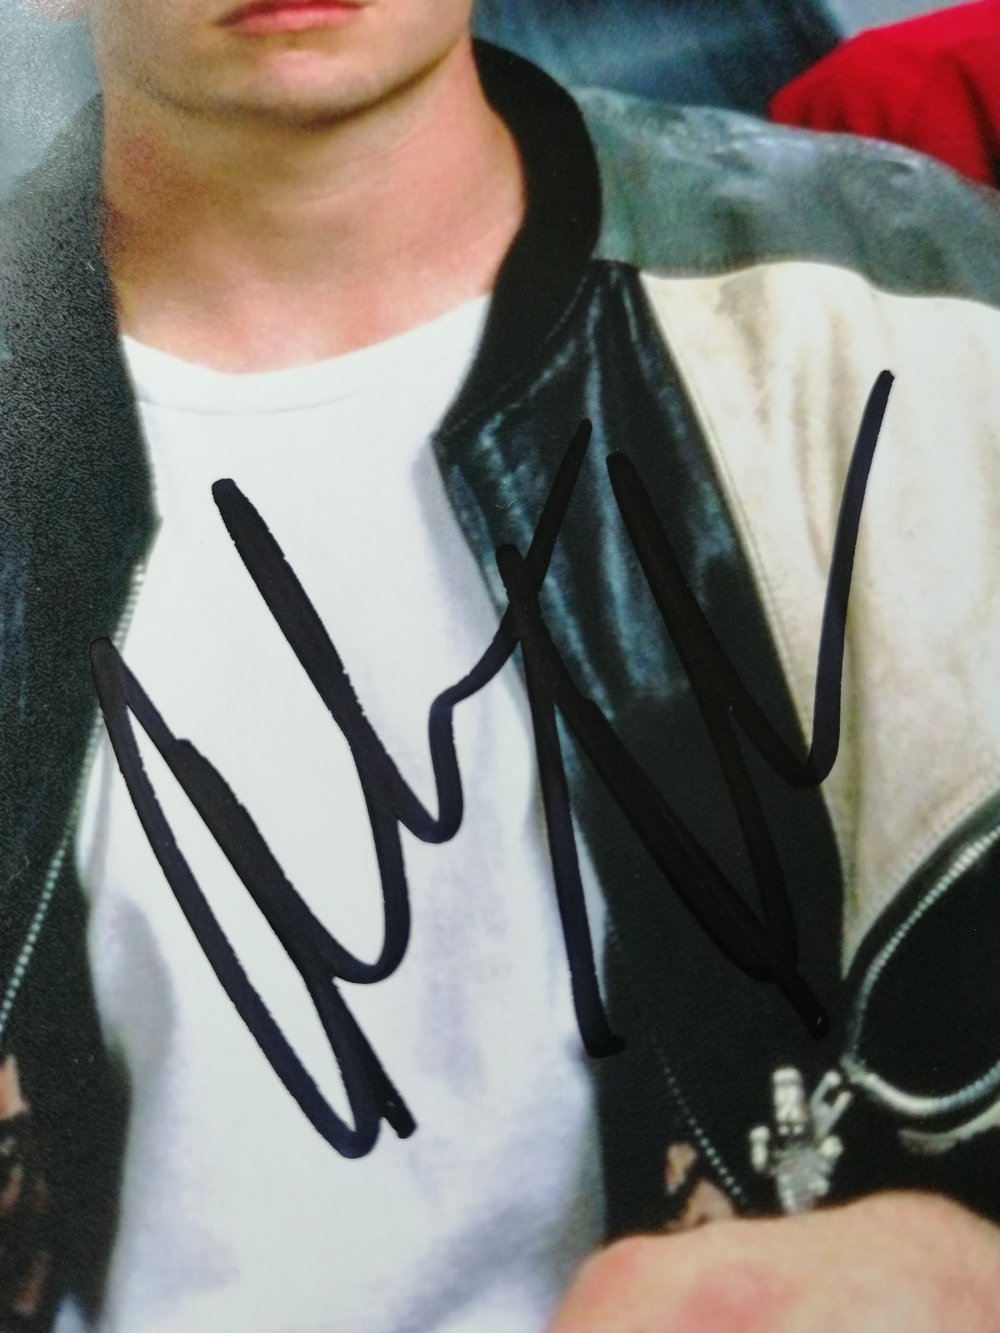 Ferris Bueller's Alan Ruck Signed 10x8